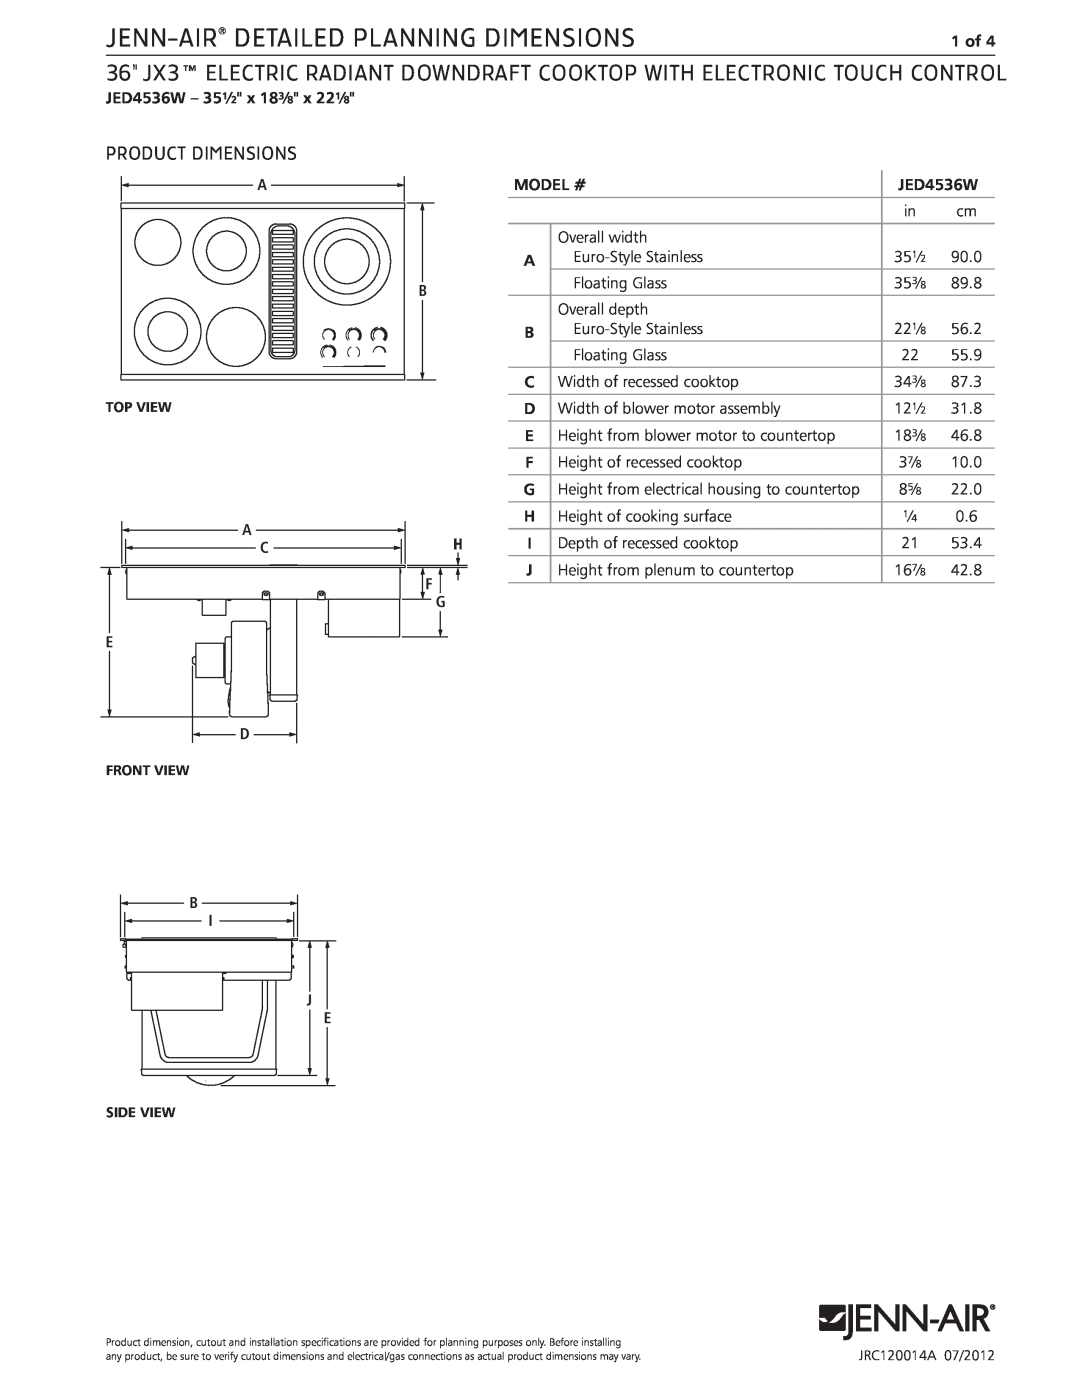 Jenn-Air JED4536W dimensions Jenn-Air Detailed Planning Dimensions, Product Dimensions 